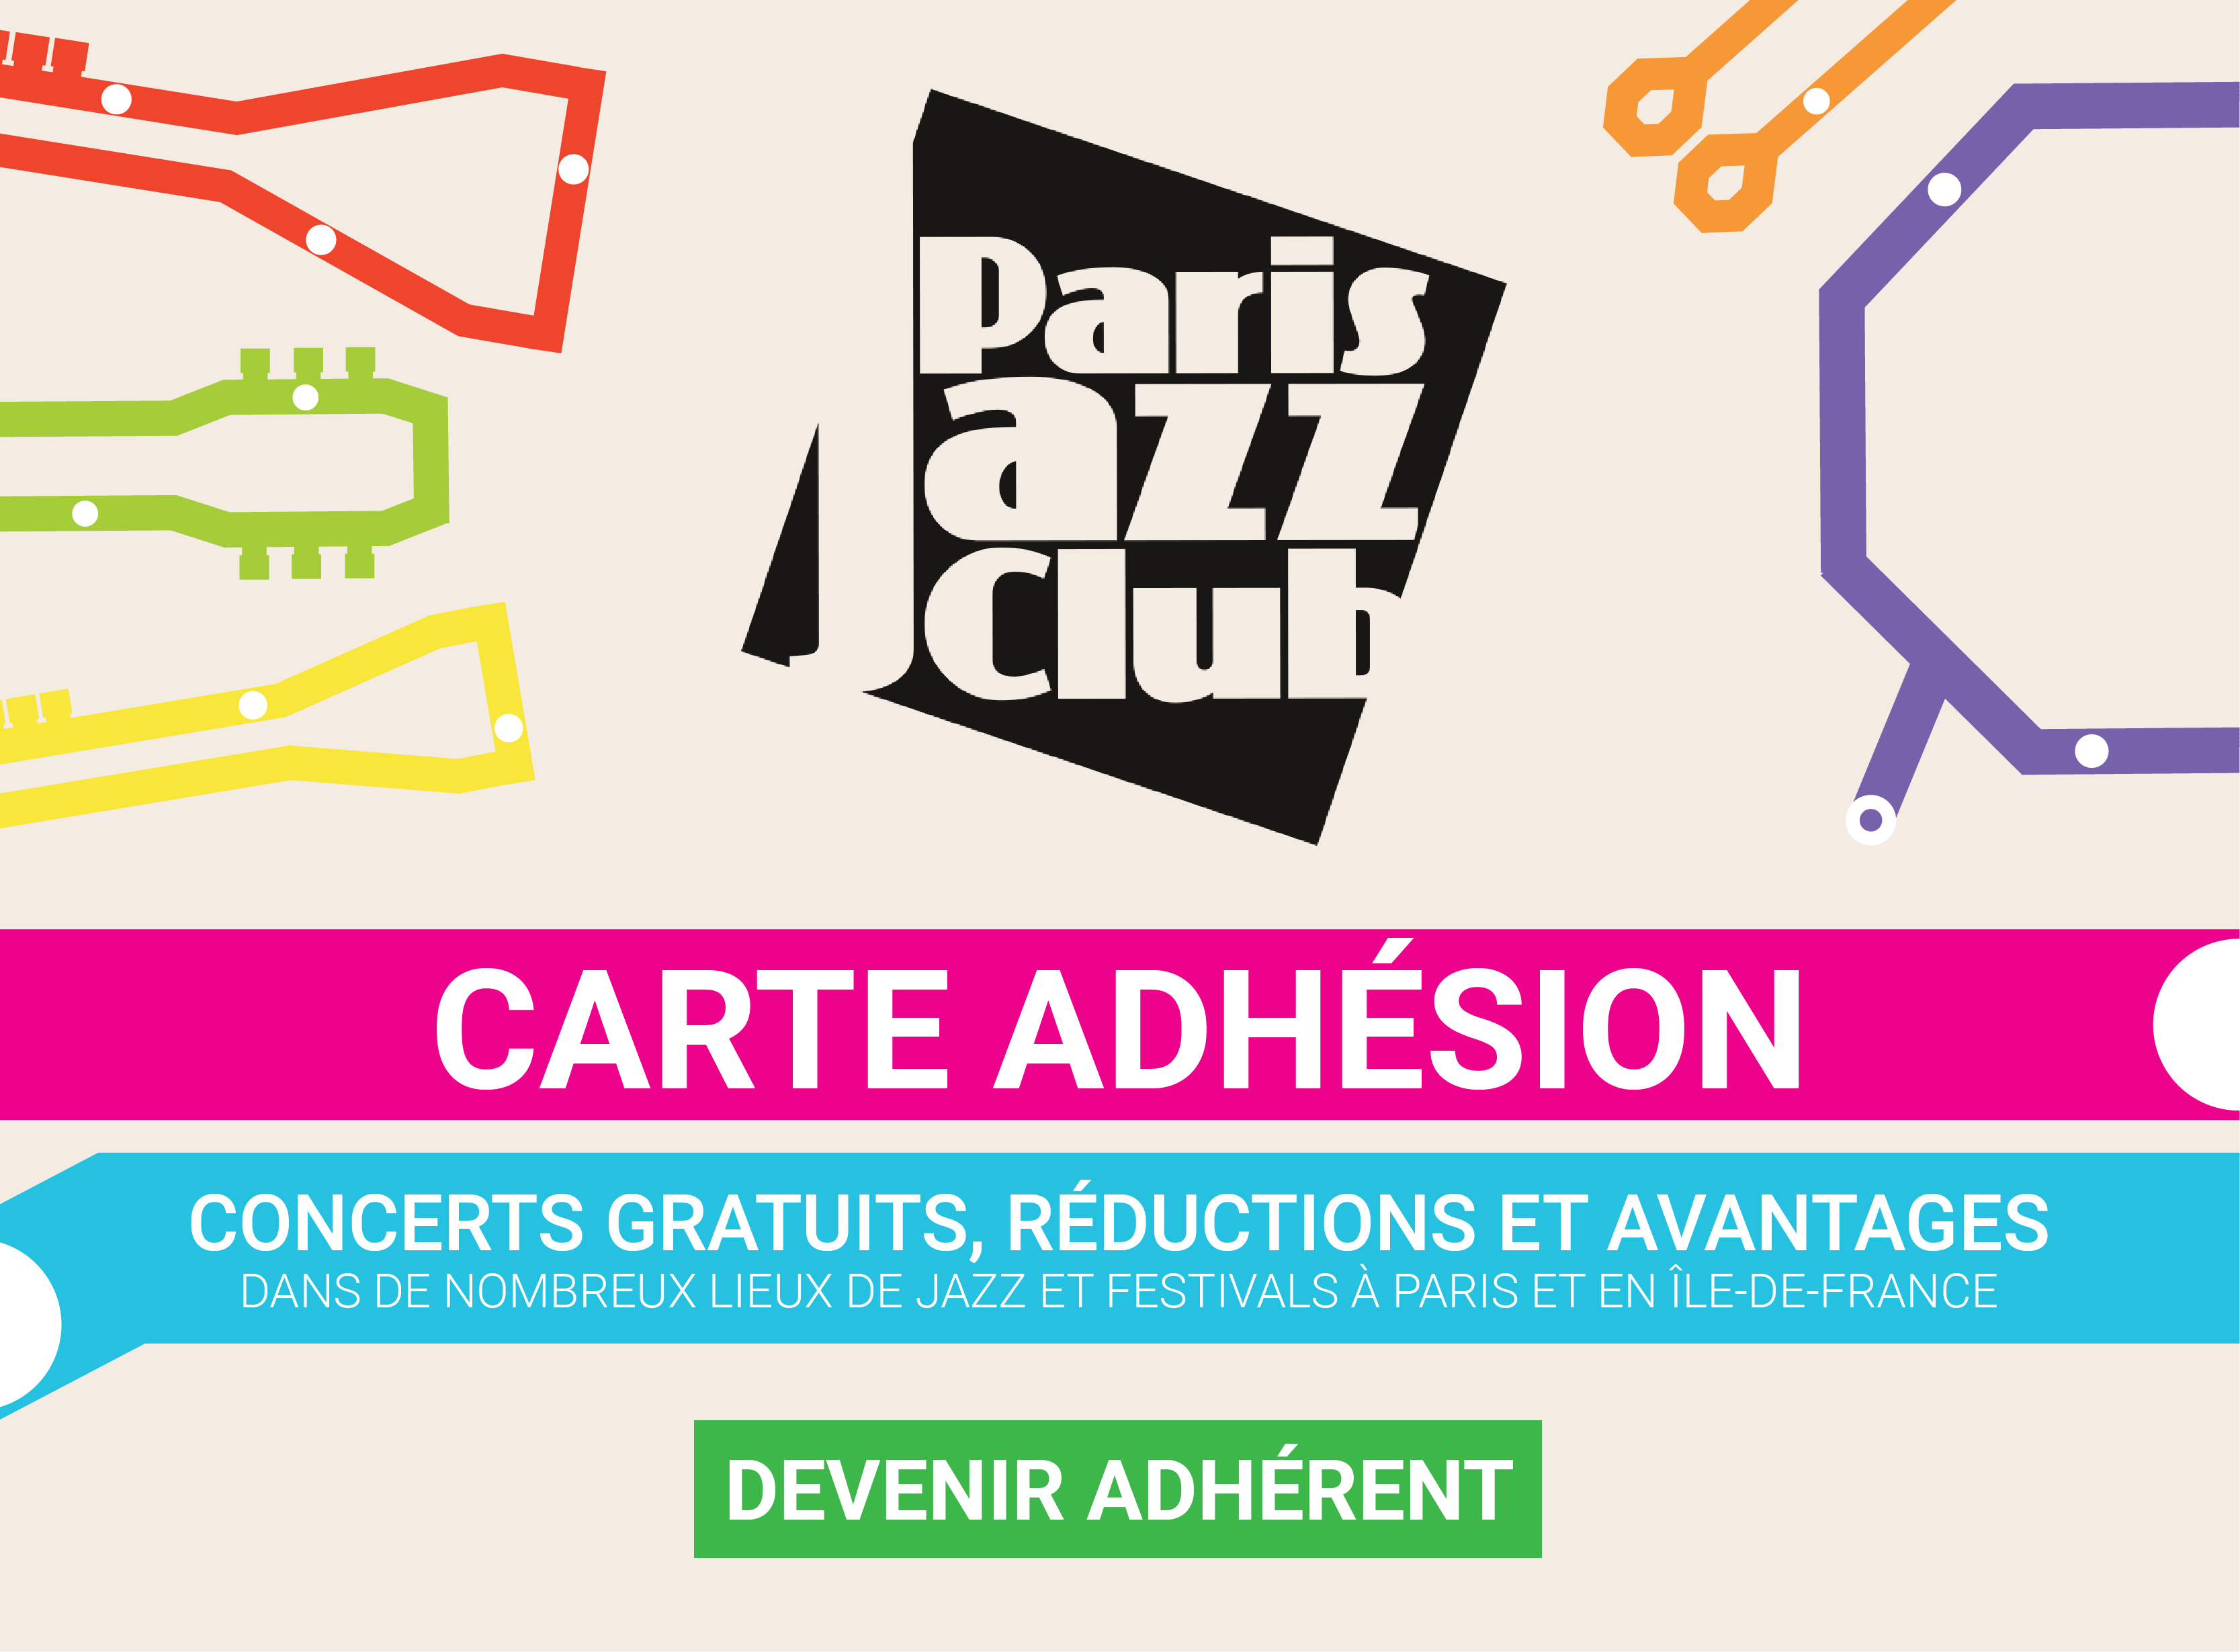 Carte adhésion Paris Jazz Club